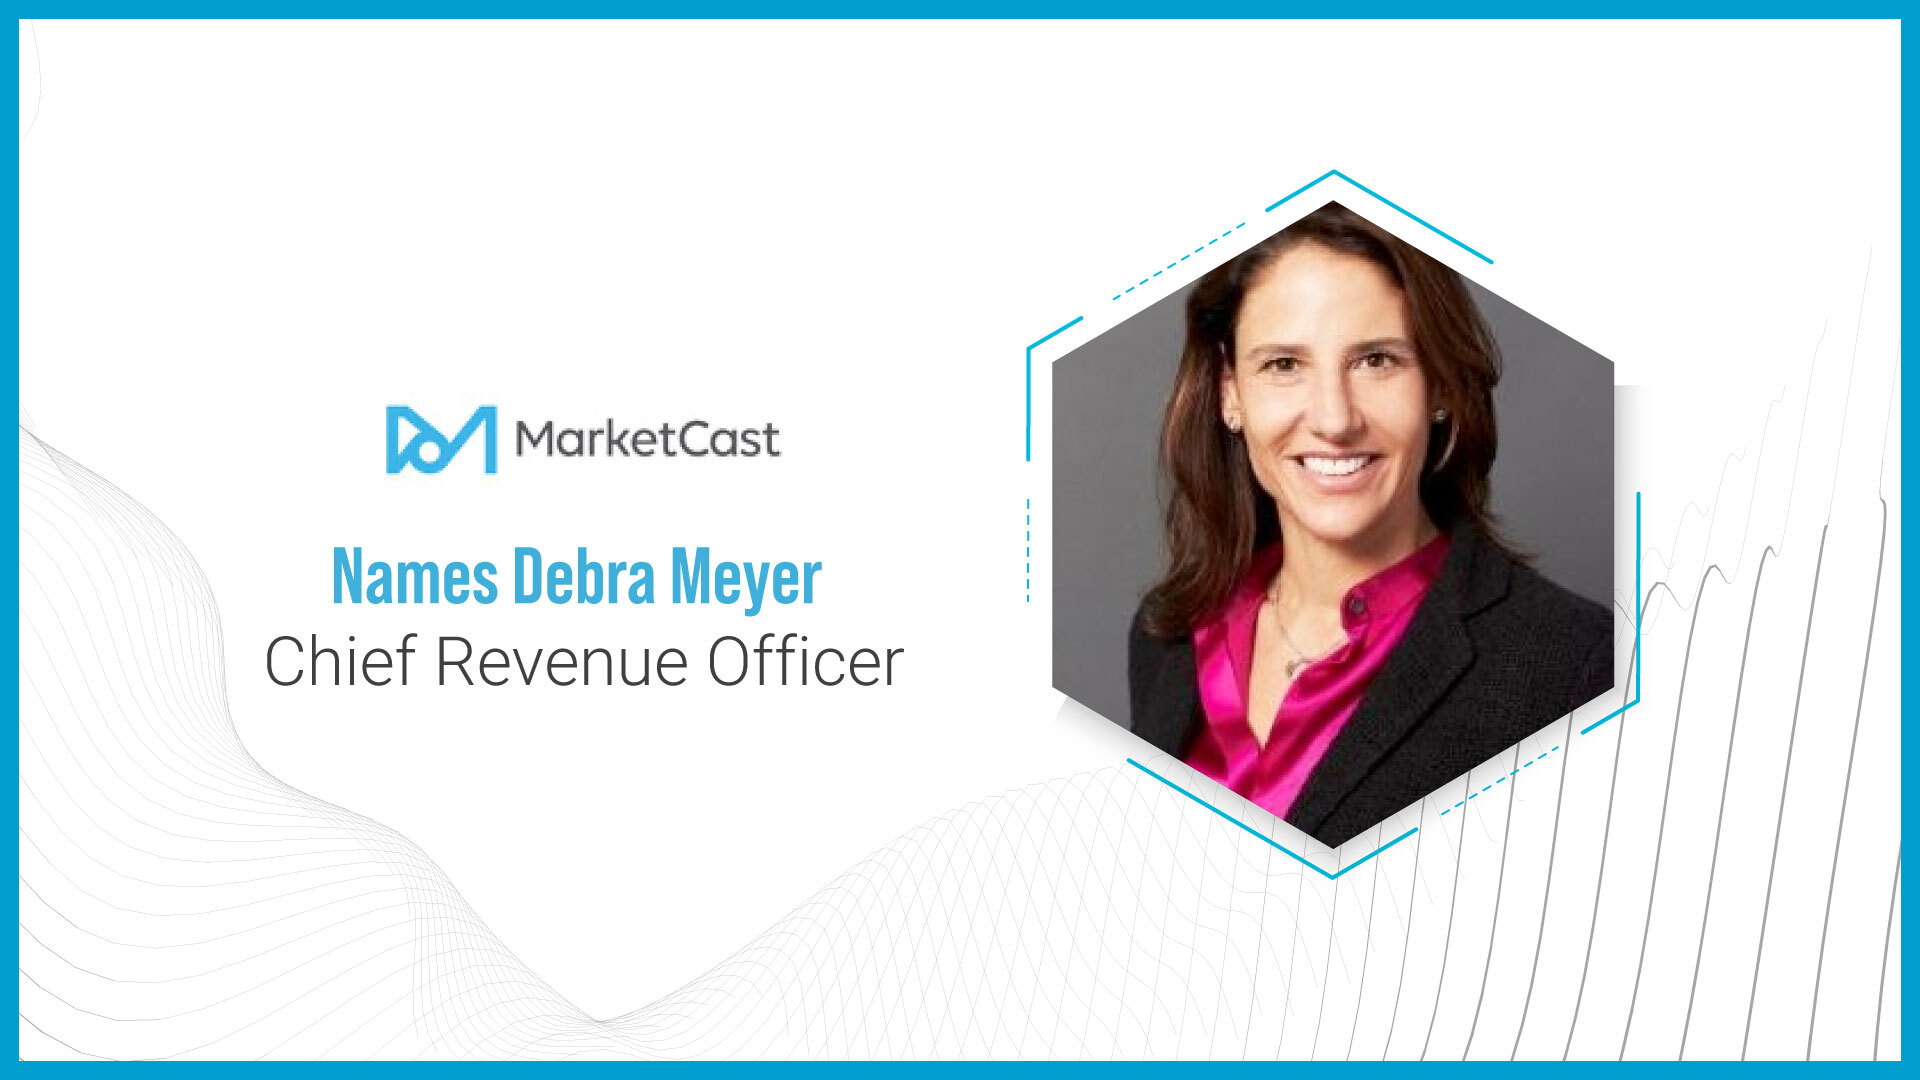 MarketCast Names Debra Meyer Chief Revenue Officer